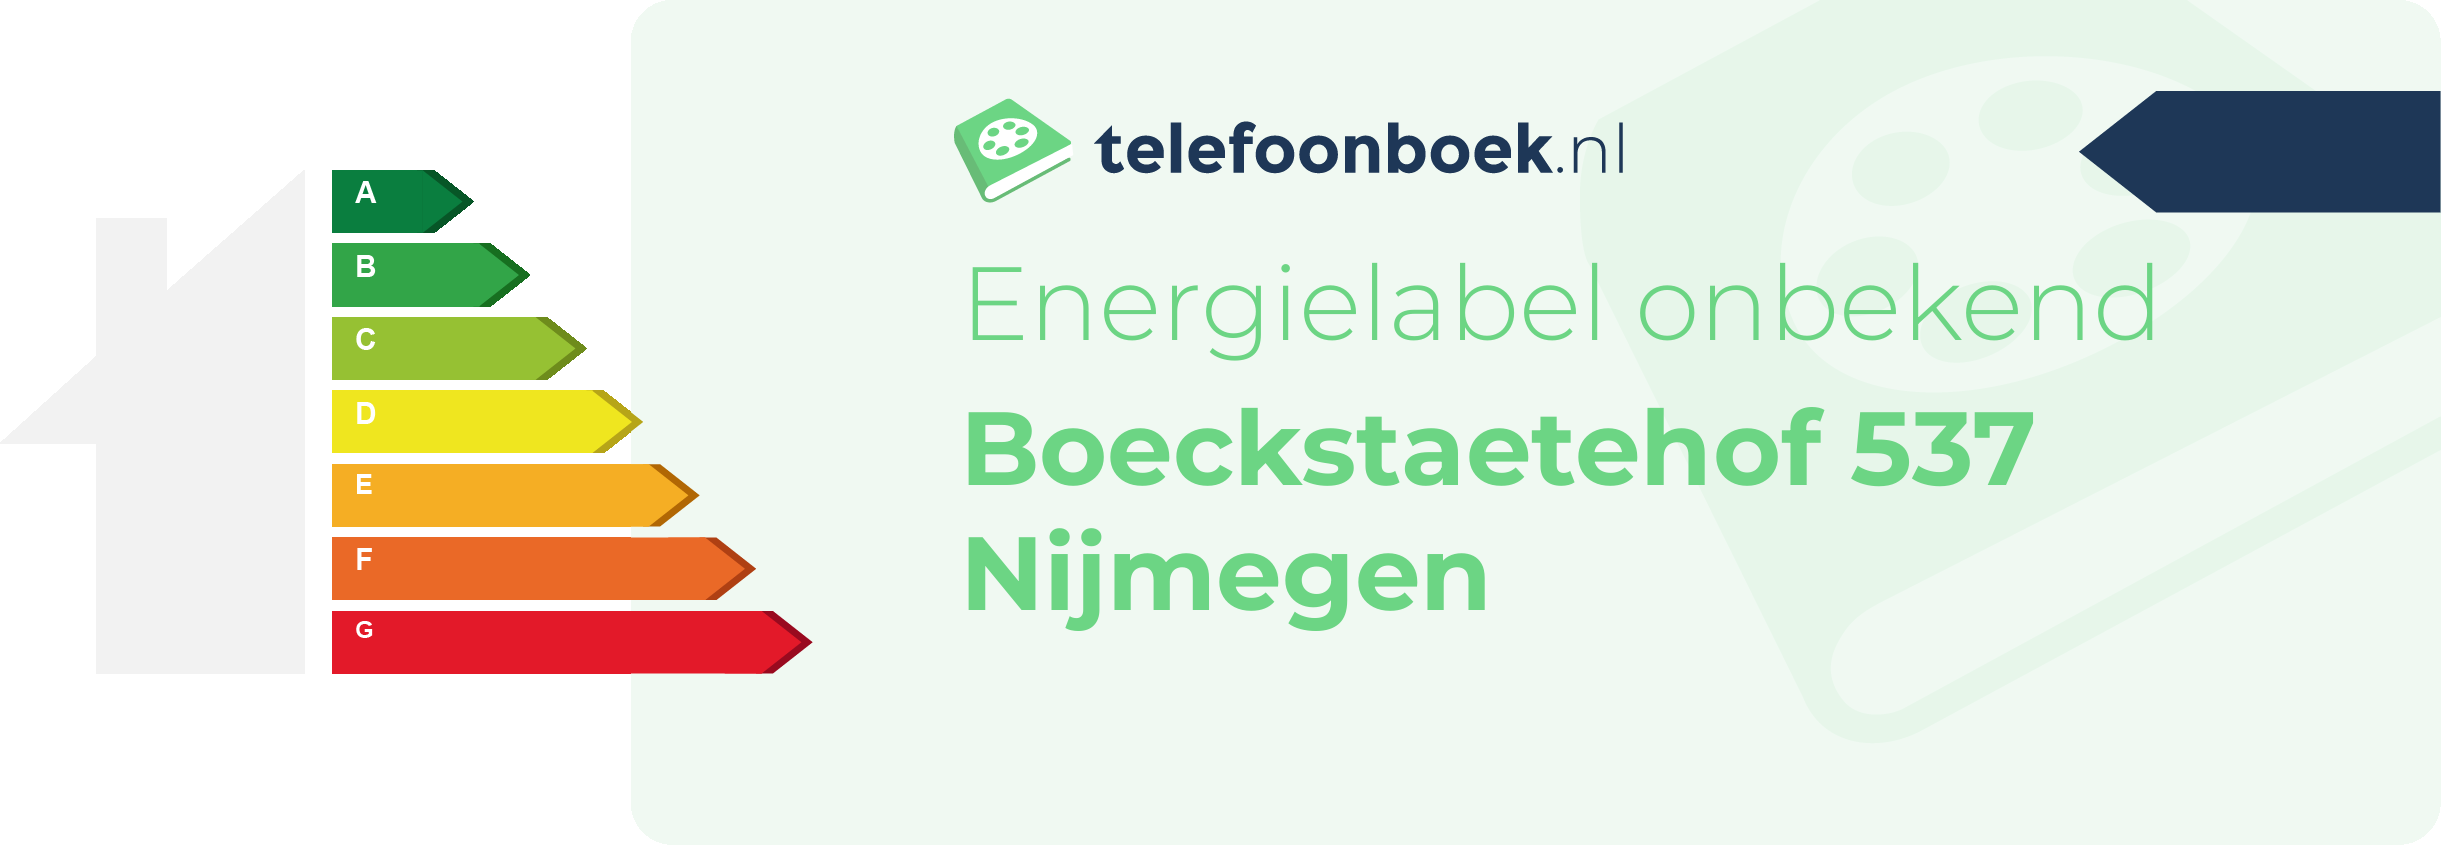 Energielabel Boeckstaetehof 537 Nijmegen